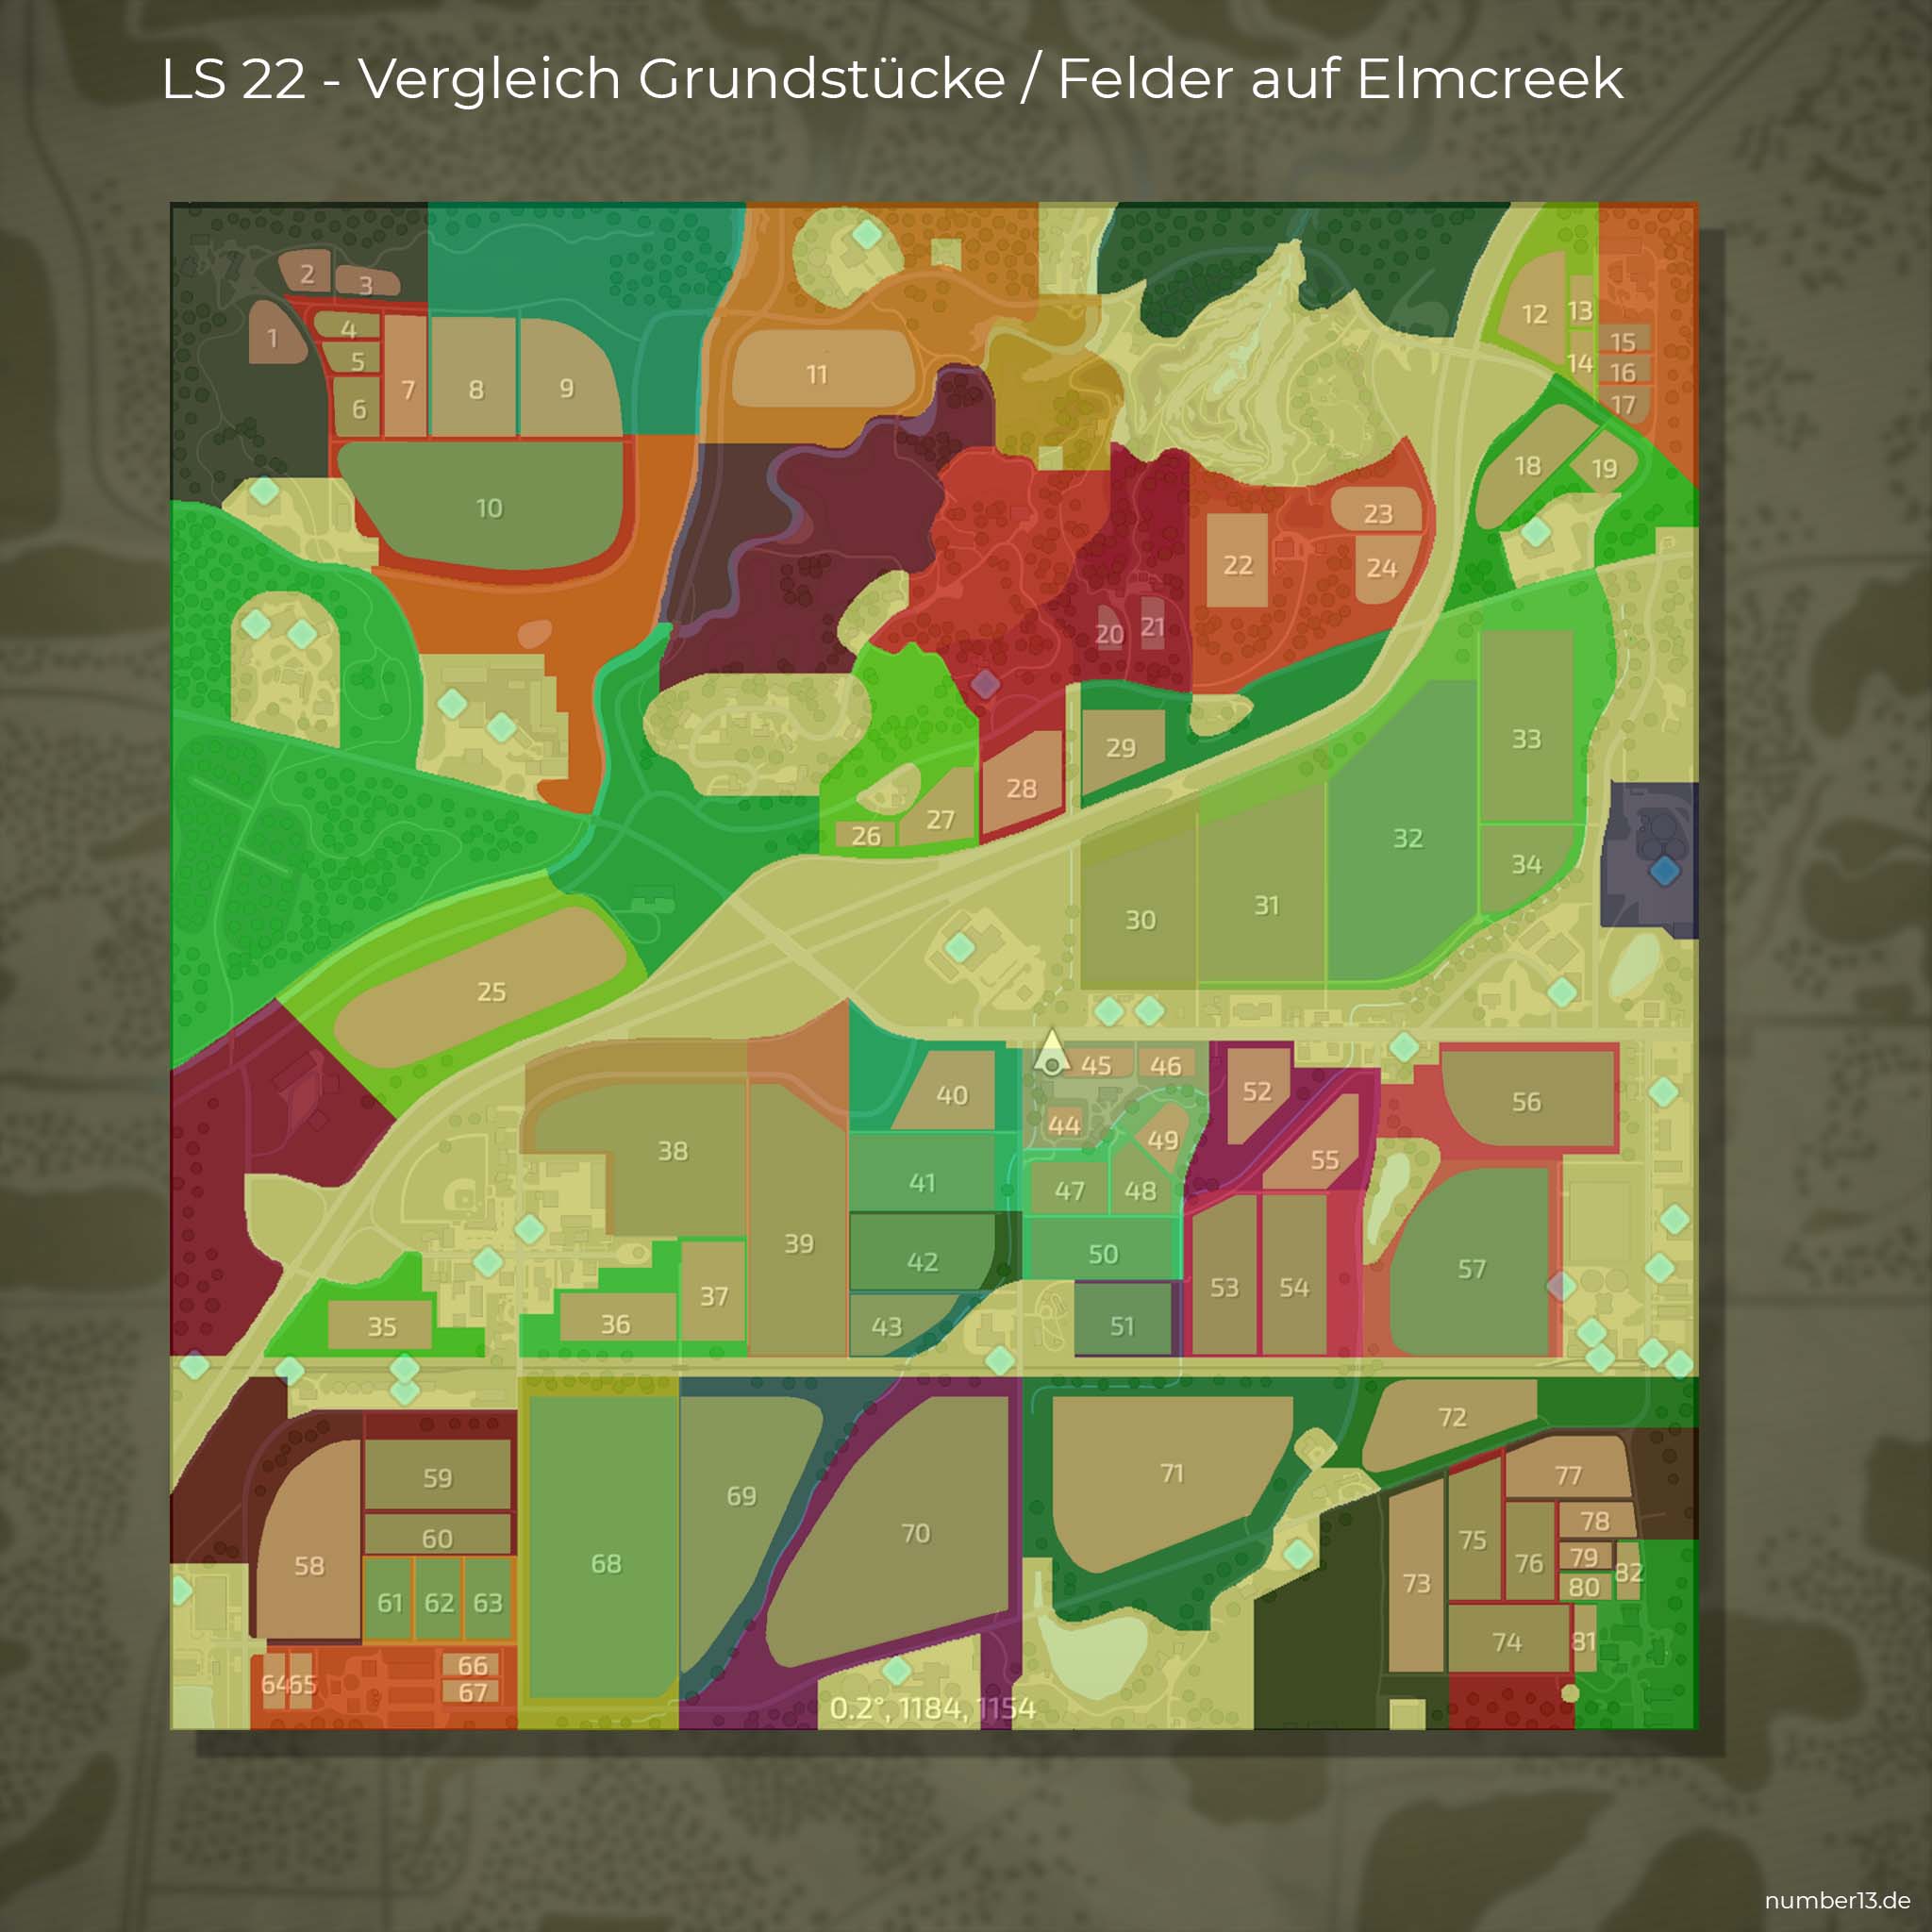 LS22: Elmcreek - effektive Kaufpreise pro Hektar und Grundstücksgrößen